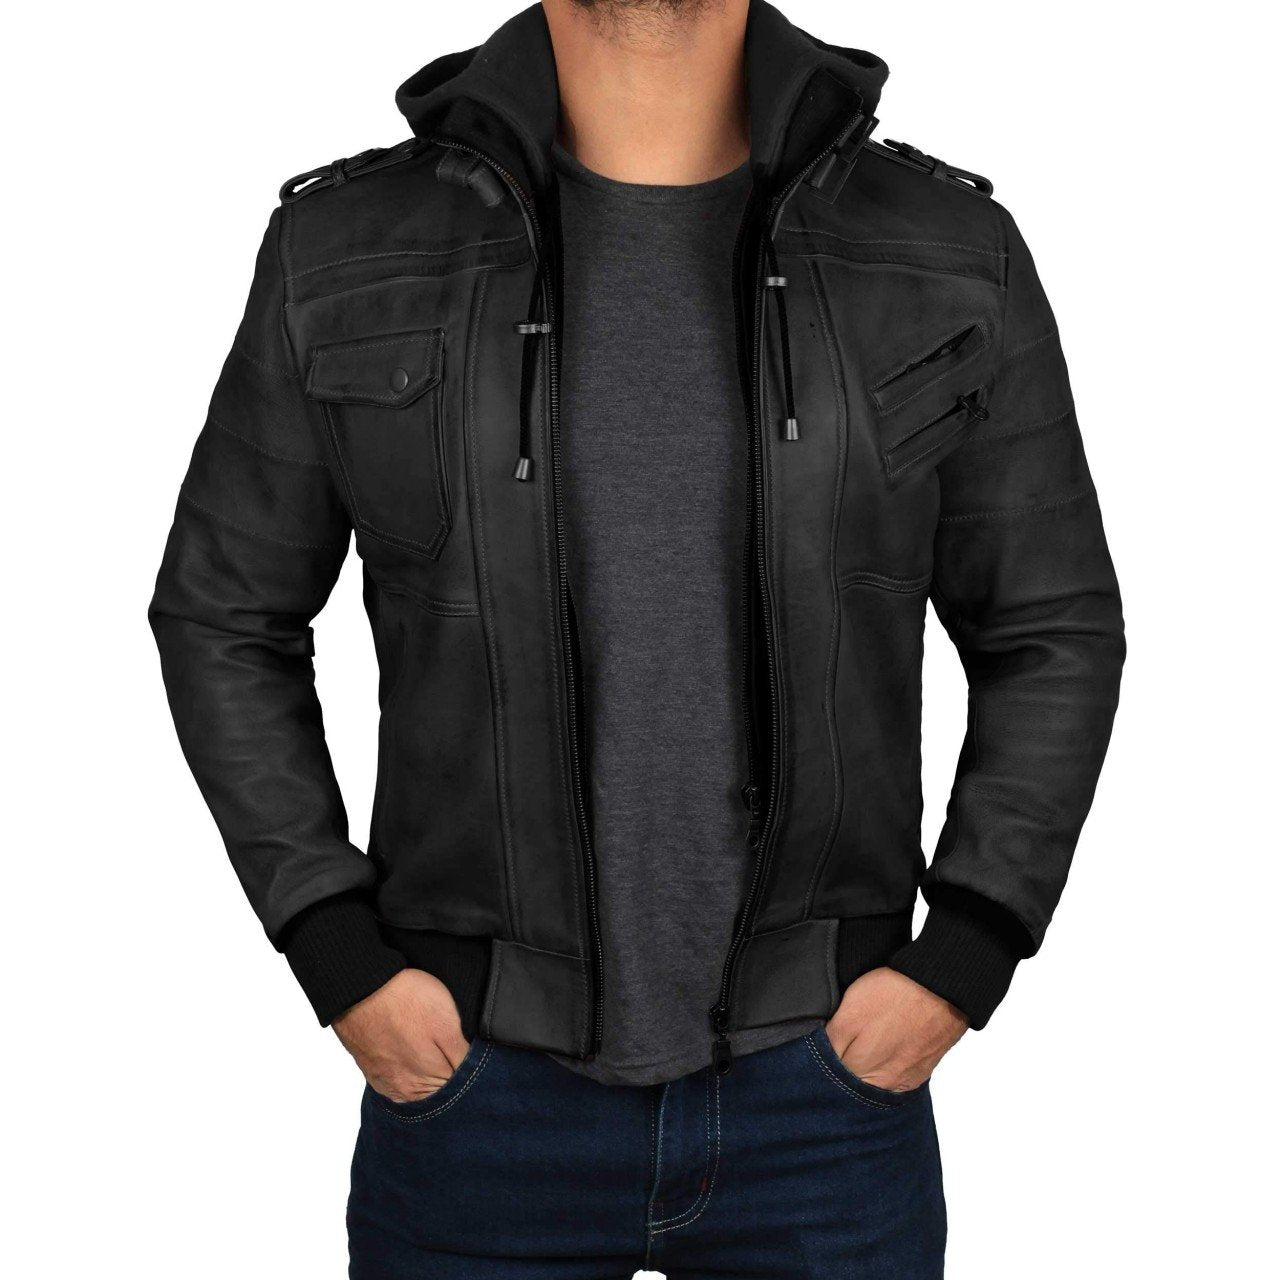 Black Hooded Leather Jacket - Leather Jacket